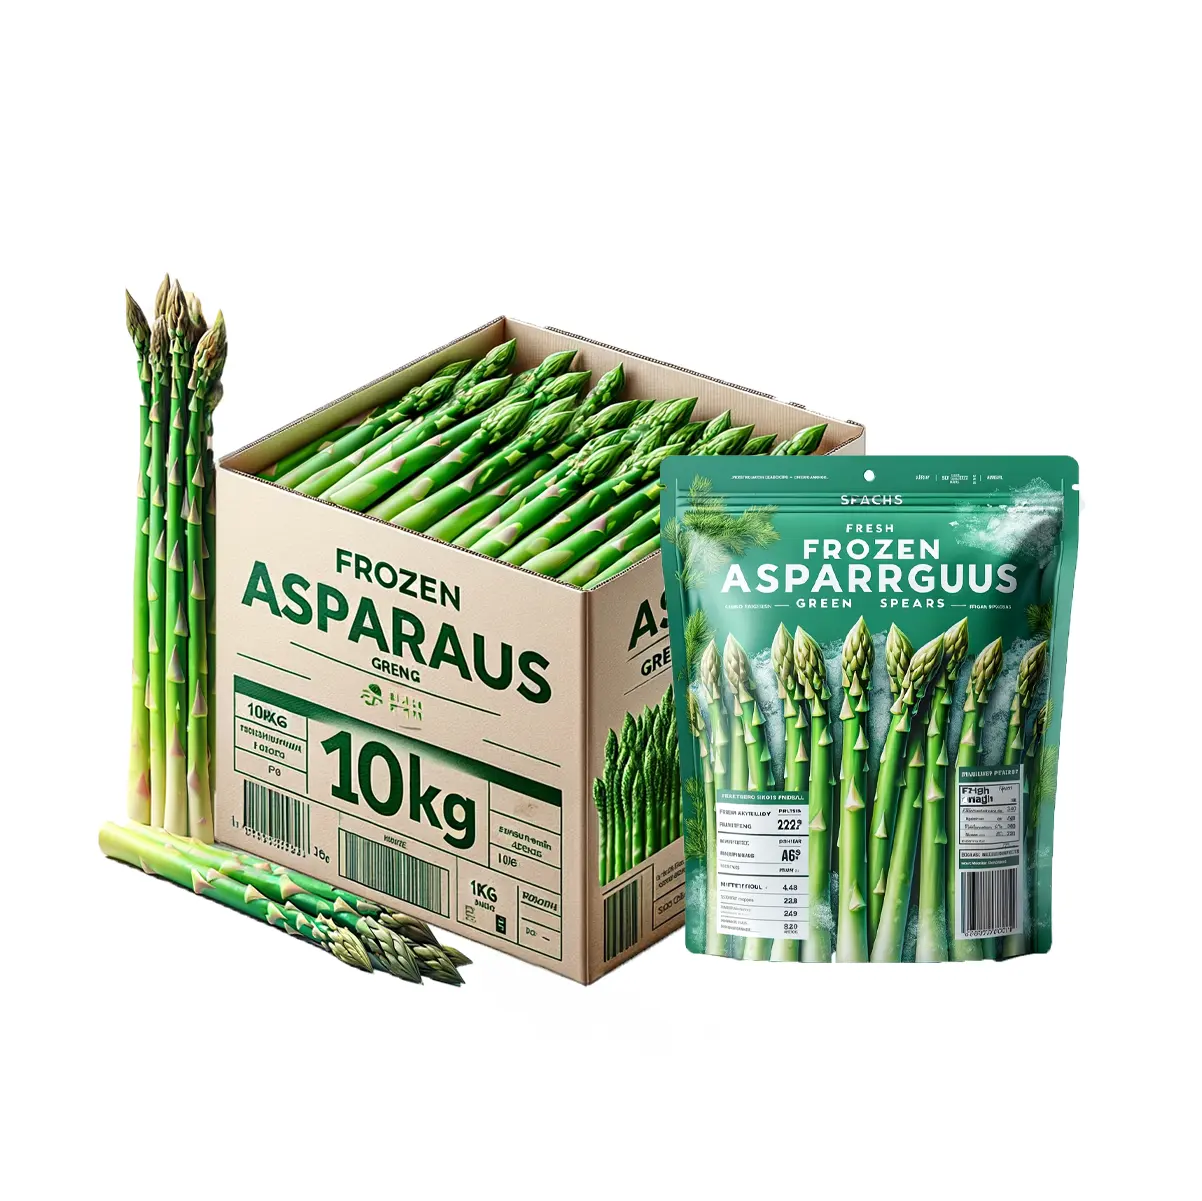 Premium-Klasse gesunder frischer Asparagus nahrhafter gefrorener Asparagus organischer grüner Asparagus für Einzelhändler und Vertriebspartner